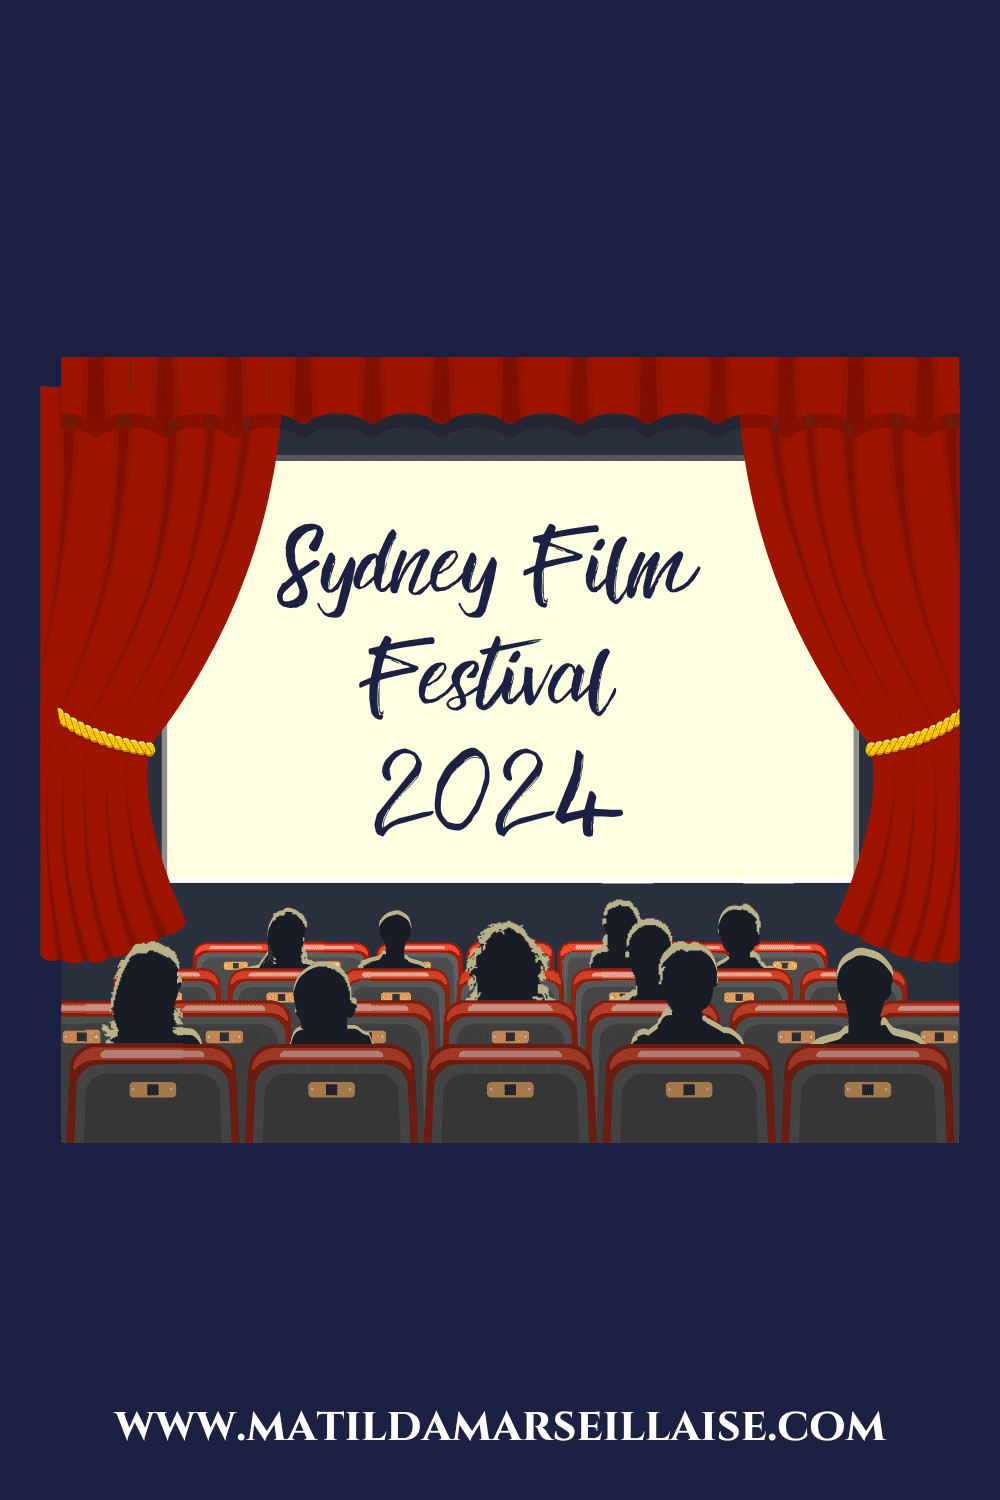 34 films à voir au Sydney Film Festival 2024